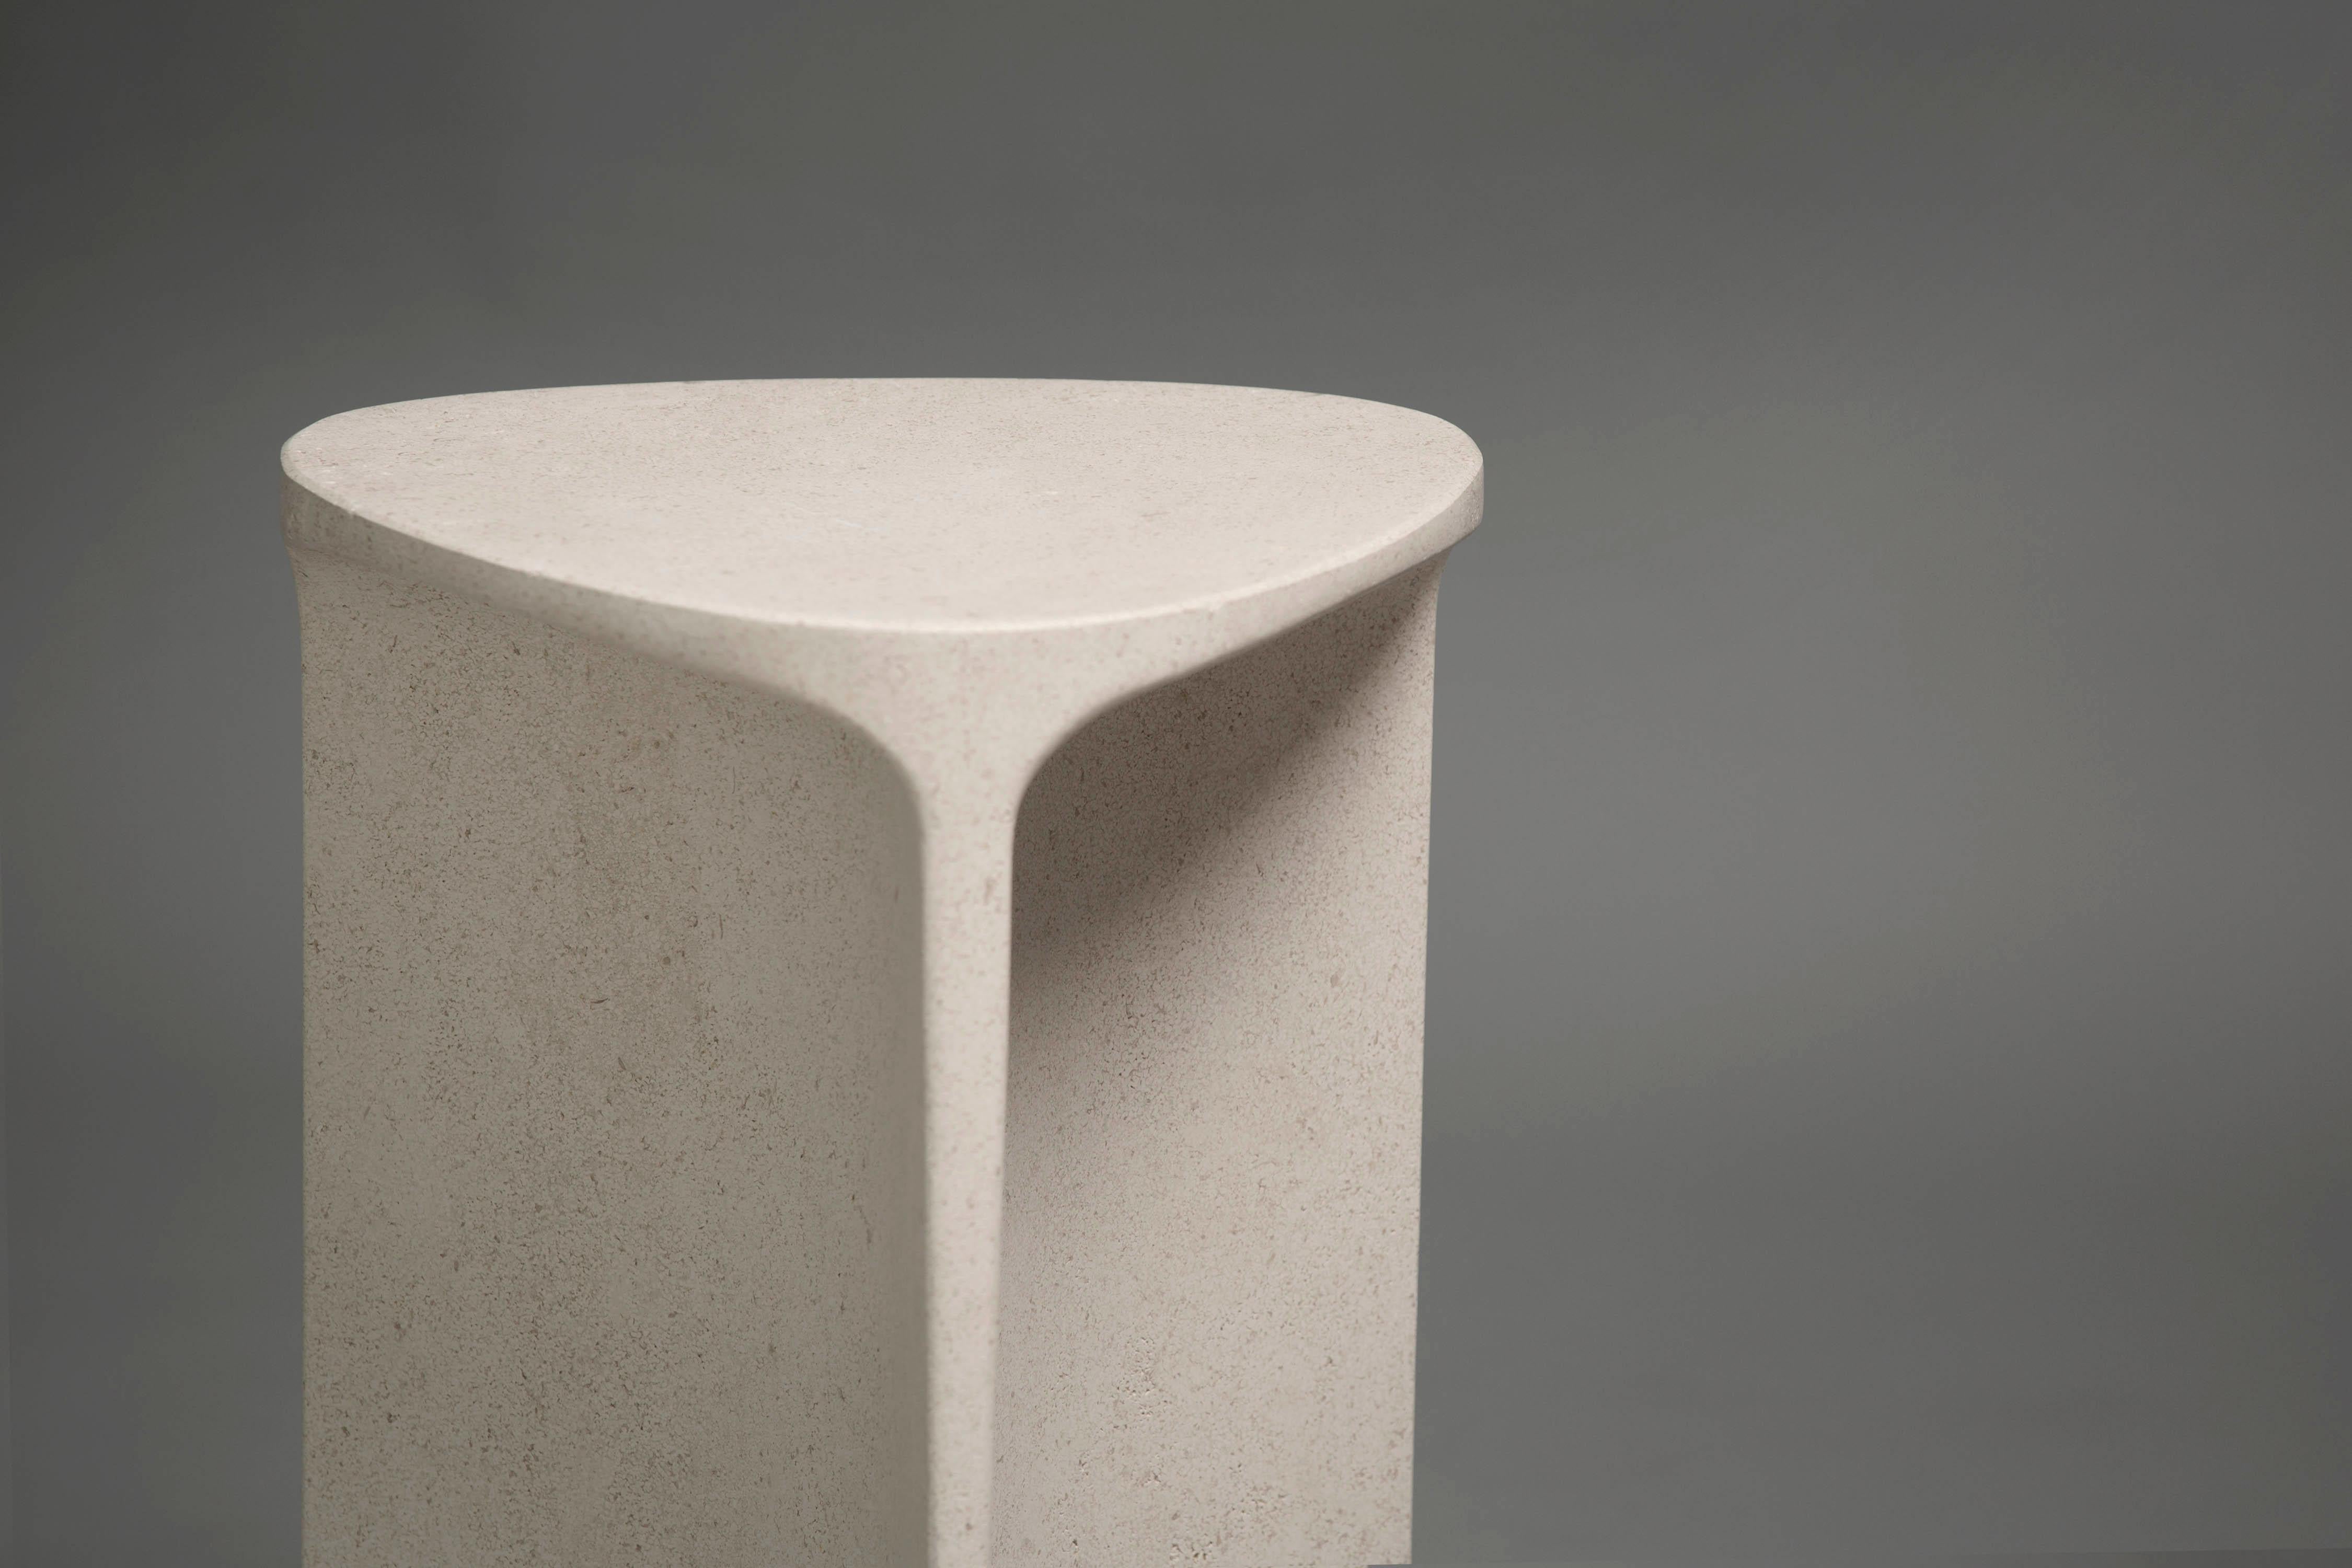 Der Beistelltisch Carv ist aus einem einzigen Block des Kalksteins von Chauvigny geschnitten.
Wesentliches und organisches Design, das auf natürliche Weise eine flache, fließende Tischplatte schafft
zu einem Y-förmigen Fuß, der die Adern des Steins